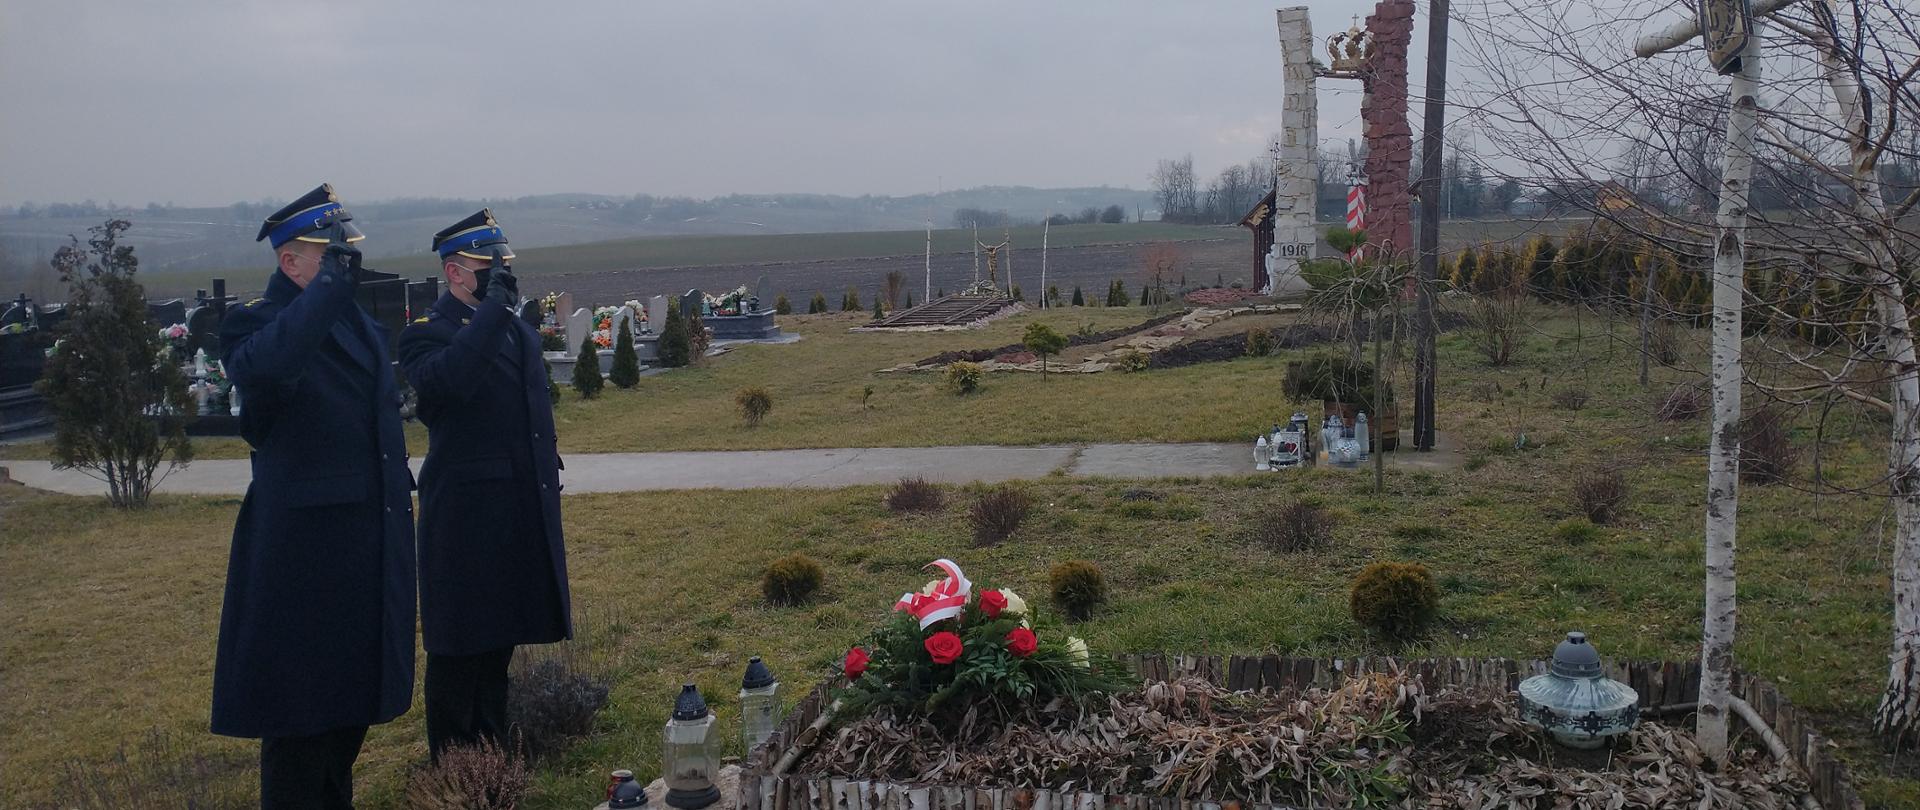 Kazimierscy strażacy uczcili pamięć i oddali hołd w dniu Narodowego Dnia Pamięci "Żołnierzy Wyklętych" w miejscowości Gorzków – powiat kazimierski.